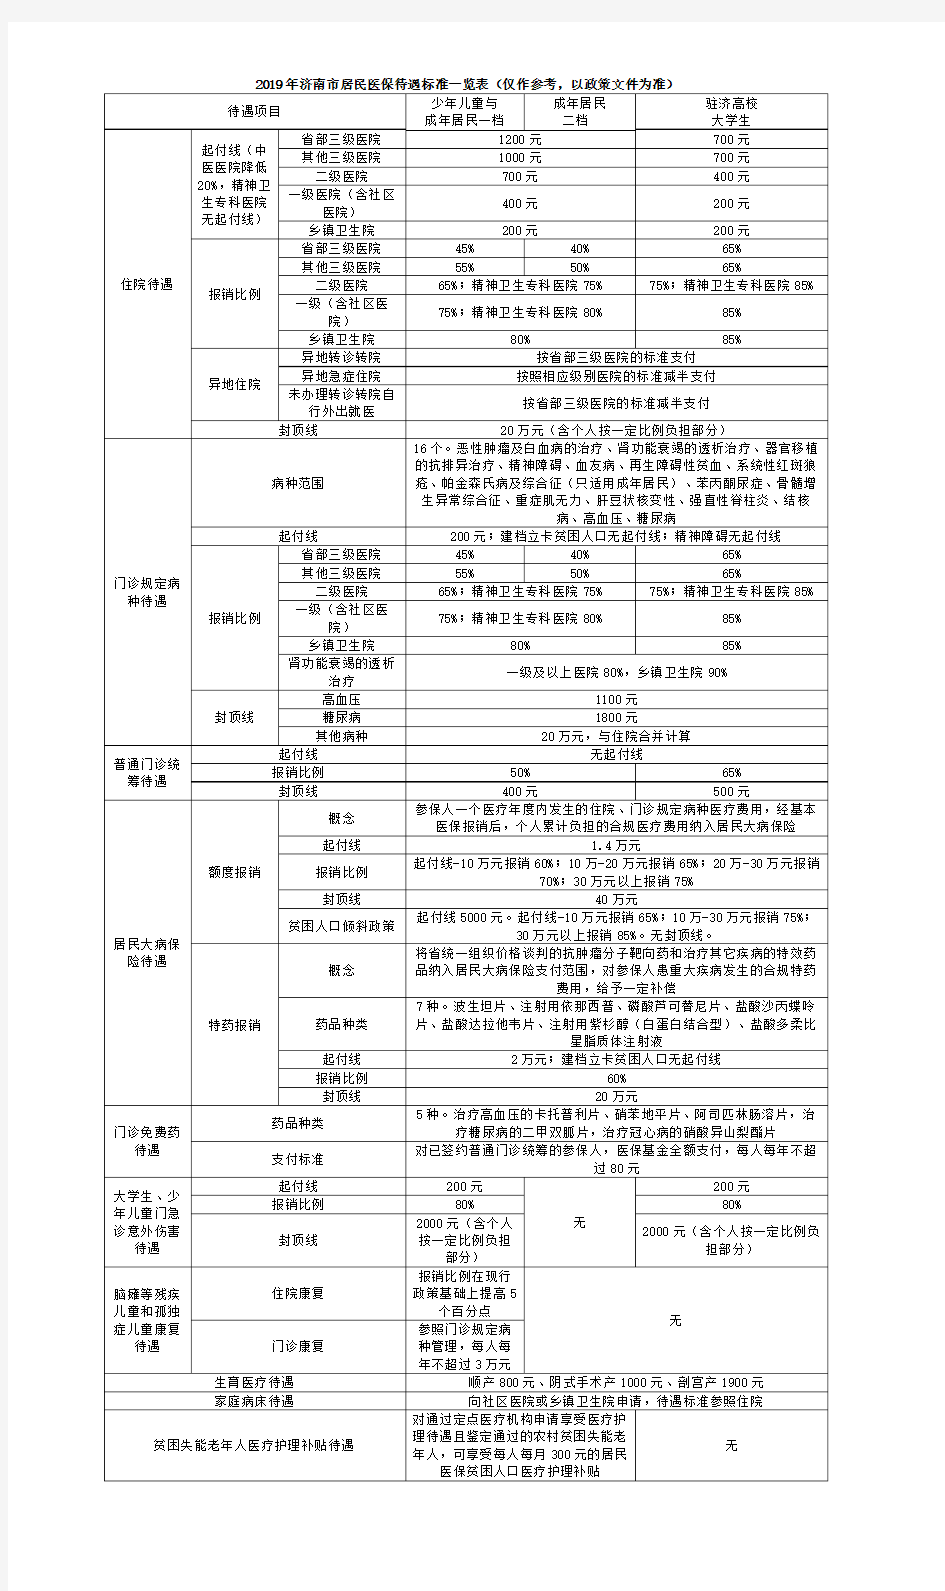 2019年济南市职工、居民医保待遇标准一览表